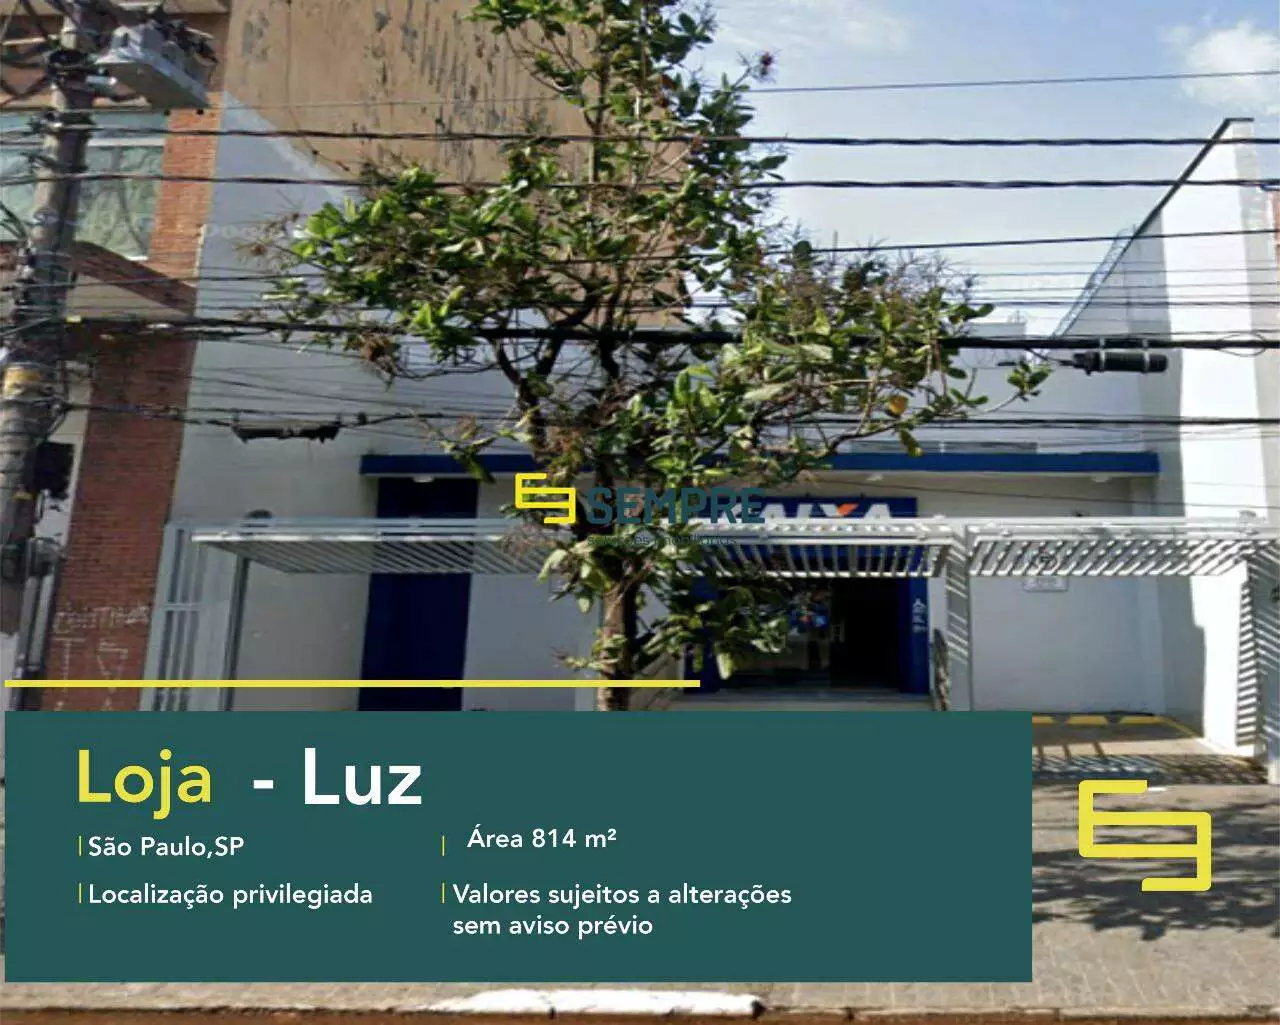 Loja à venda em São Paulo - Bairro Luz, em excelente localização. O estabelecimento comercial conta com área de 814 m².